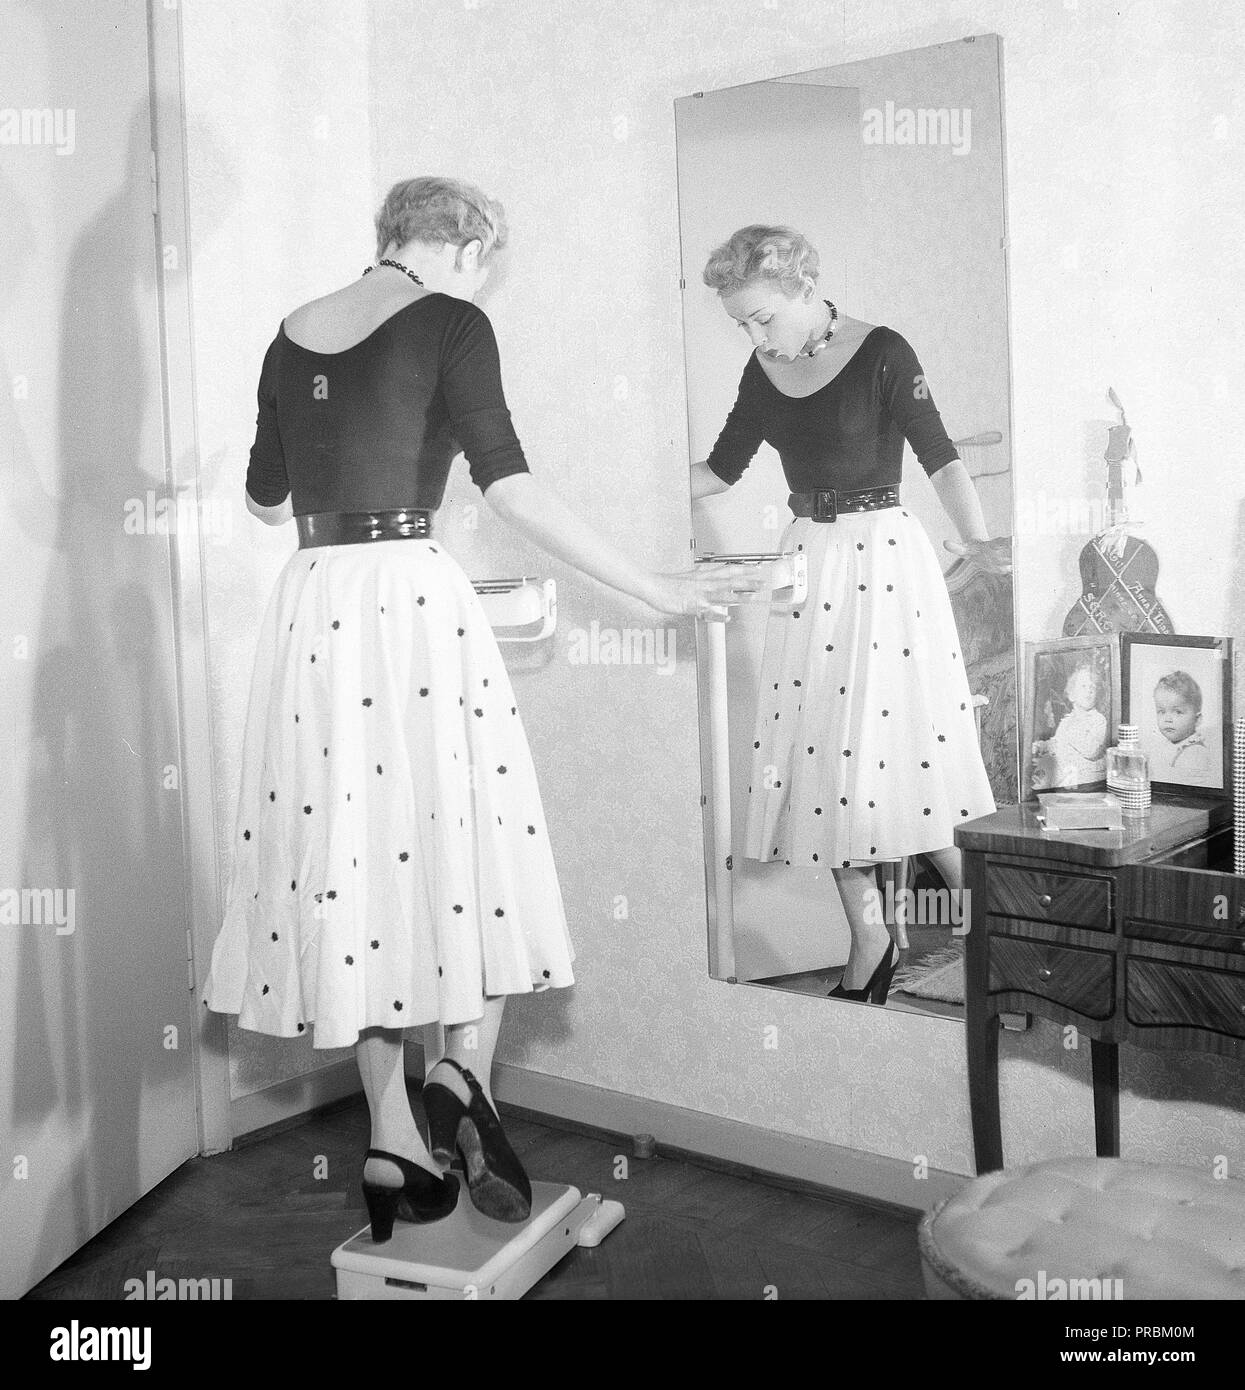 La mode des années 1950. Une jeune femme se tient debout sur une jambe sur l'échelle d'essayer d'être aussi léger que possible. Actrice photos AnnaLisa Ericson, 1913-1911. La Suède des années 1950. Kristoffersson Photo ref BM74-10 Banque D'Images